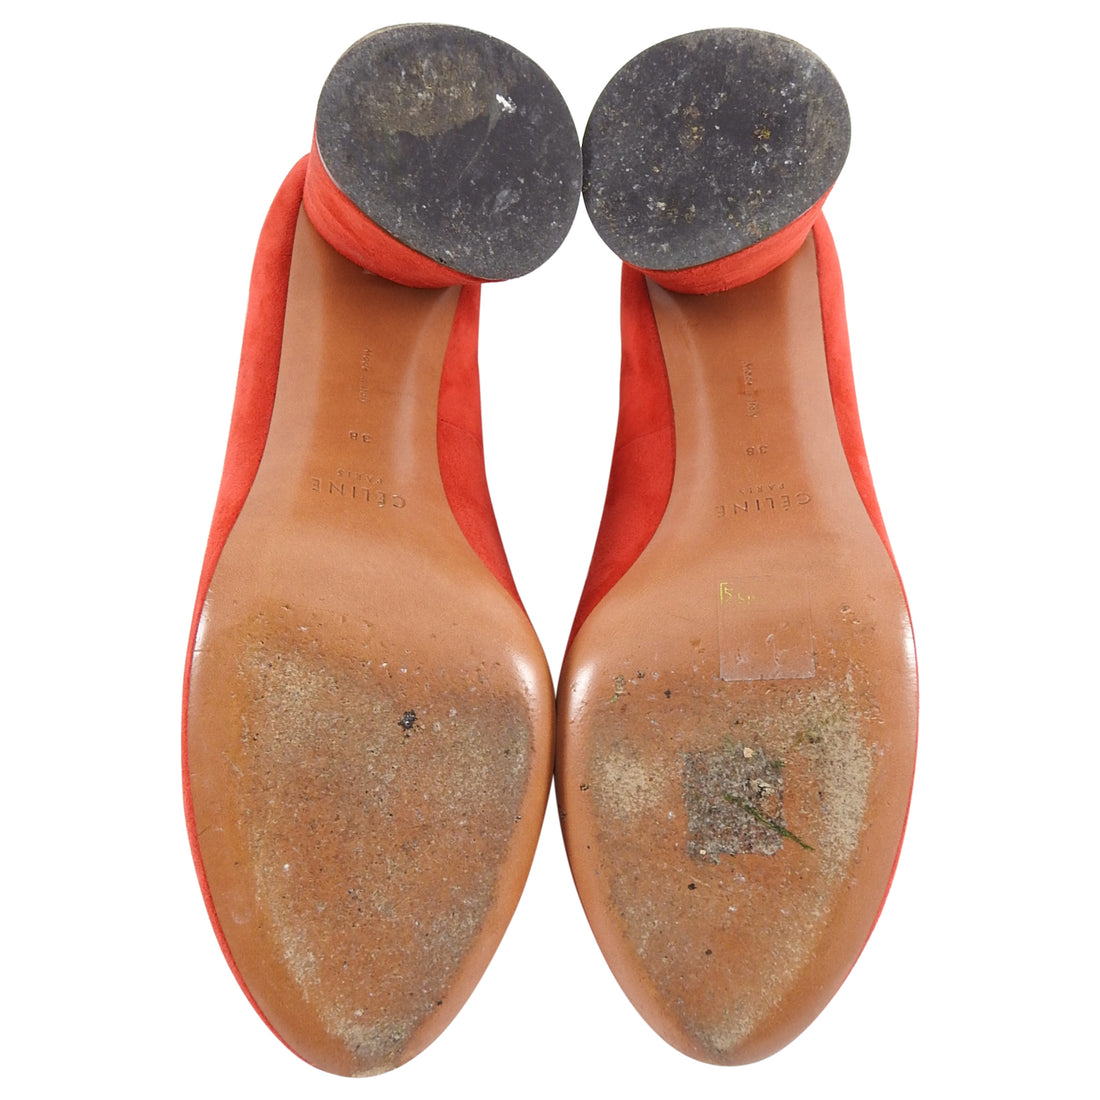 Celine Red Suede Cylinder Heels Pumps Shoes - 38